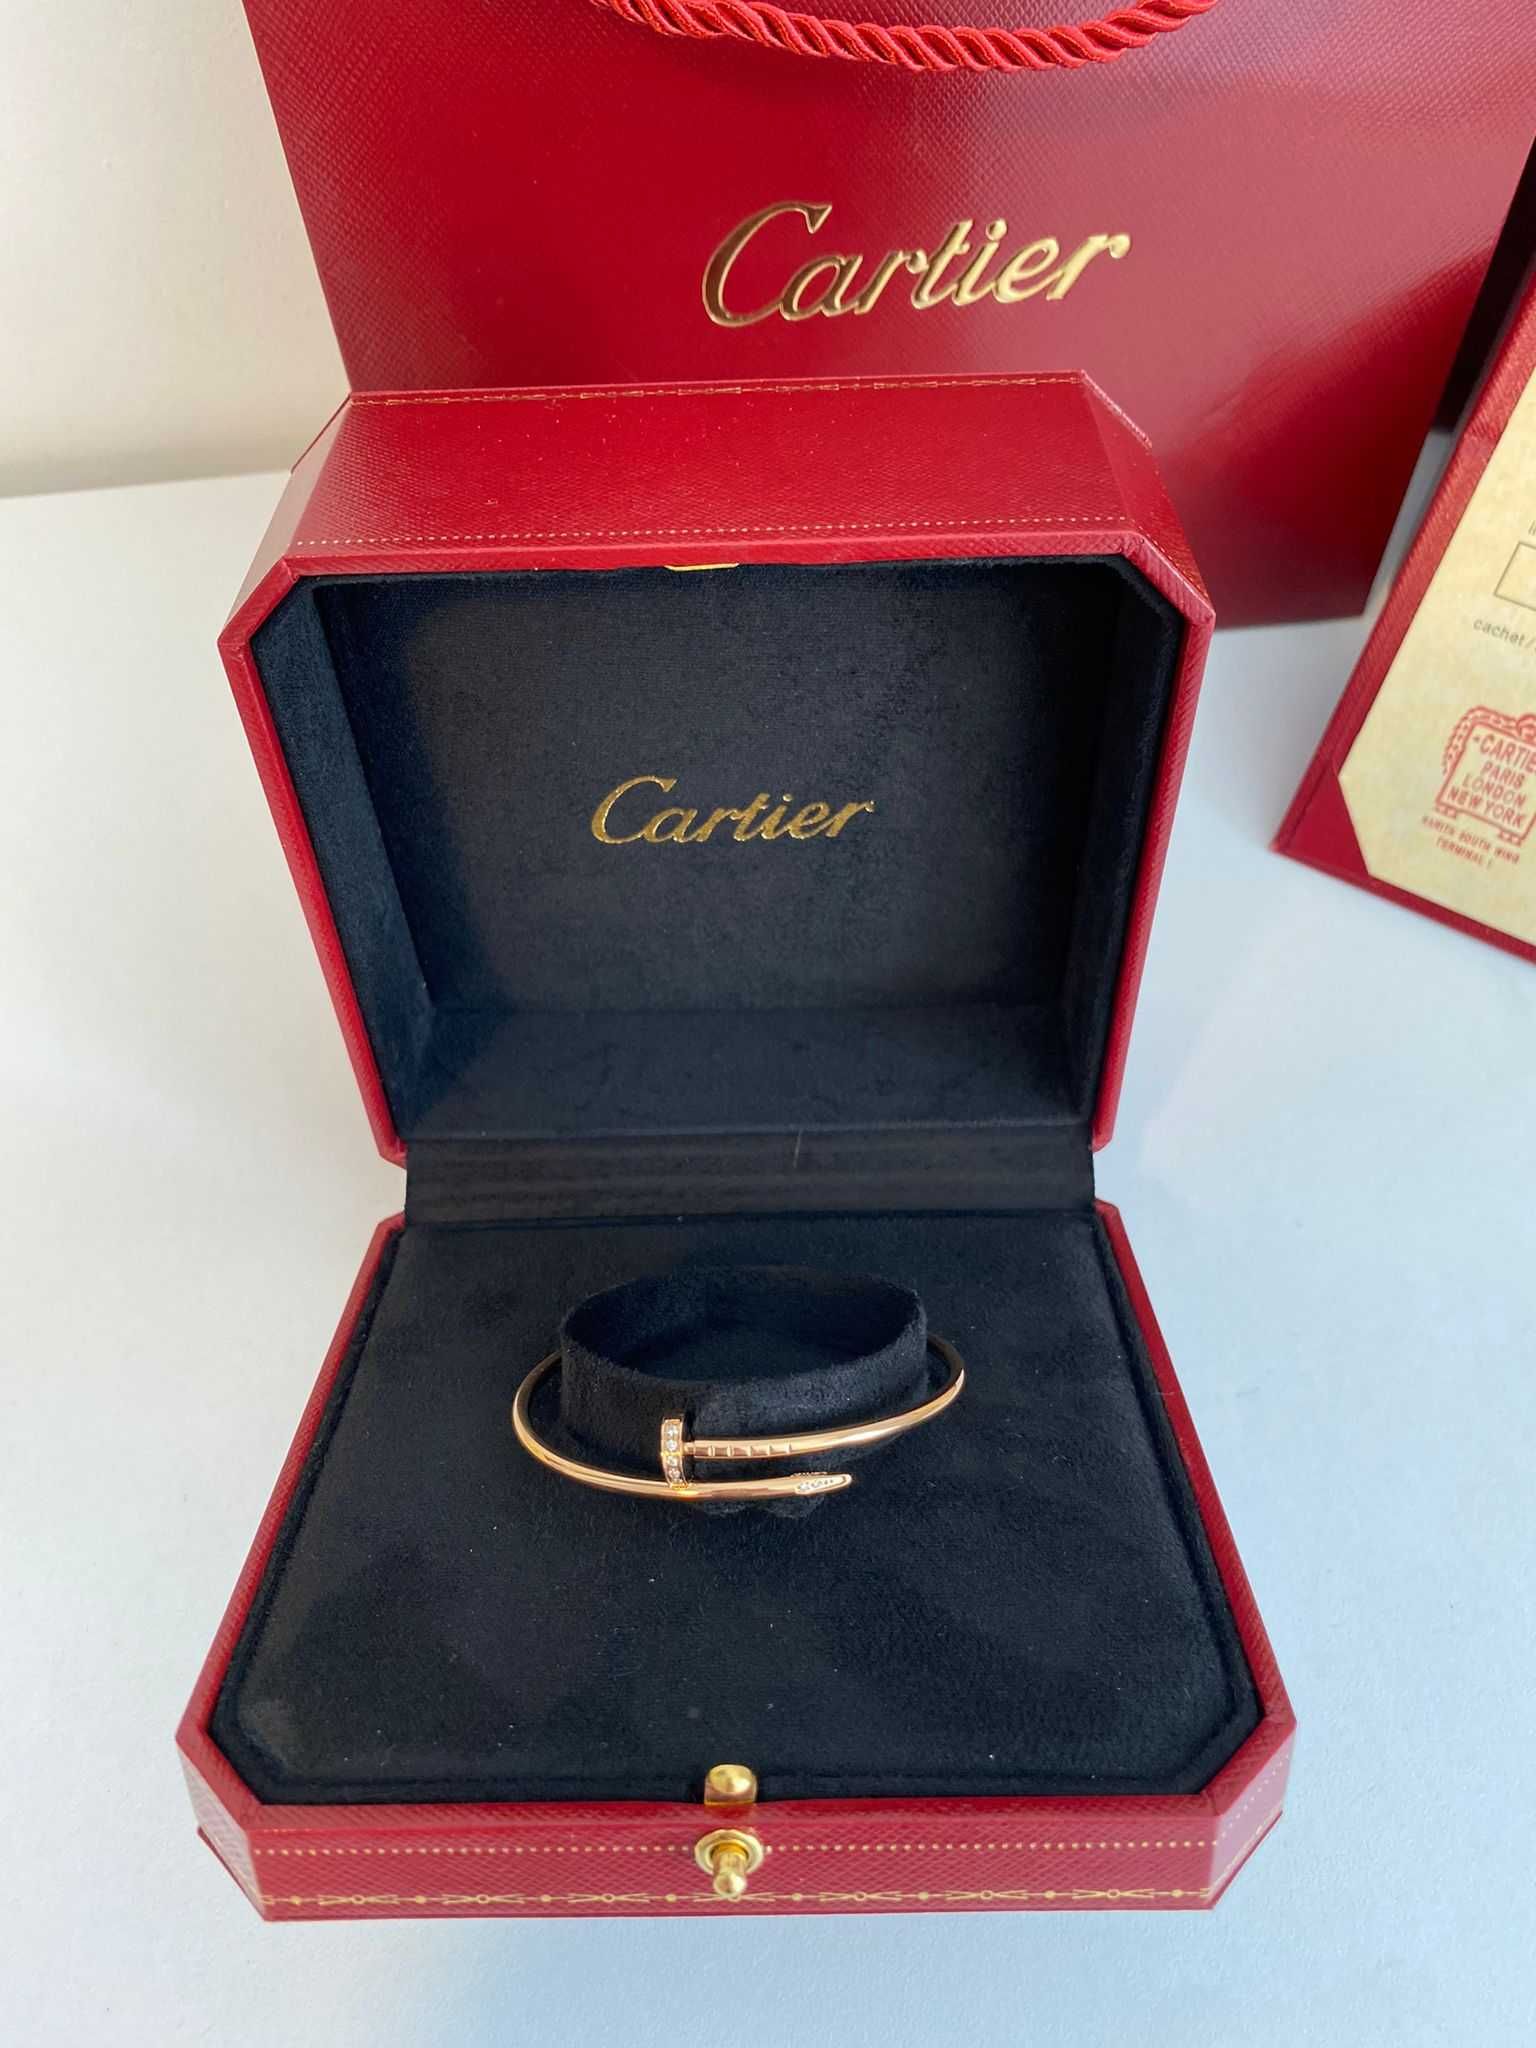 Brățară Cartier Juste un Clou Small 15 Rose Gold 24K diamond cu cutie